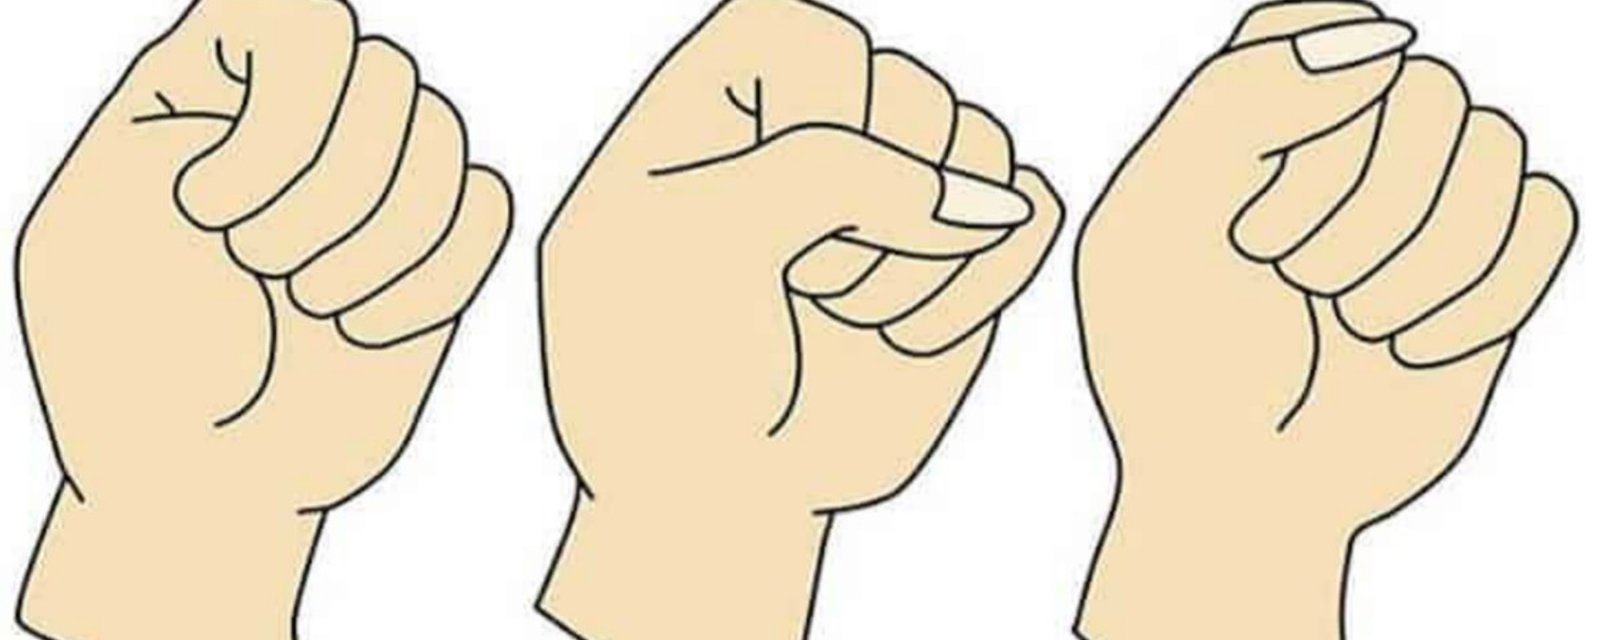 Quand vous fermez la main, est-ce que votre pouce est caché sous vos doigts? Connaissez-vous la signification?